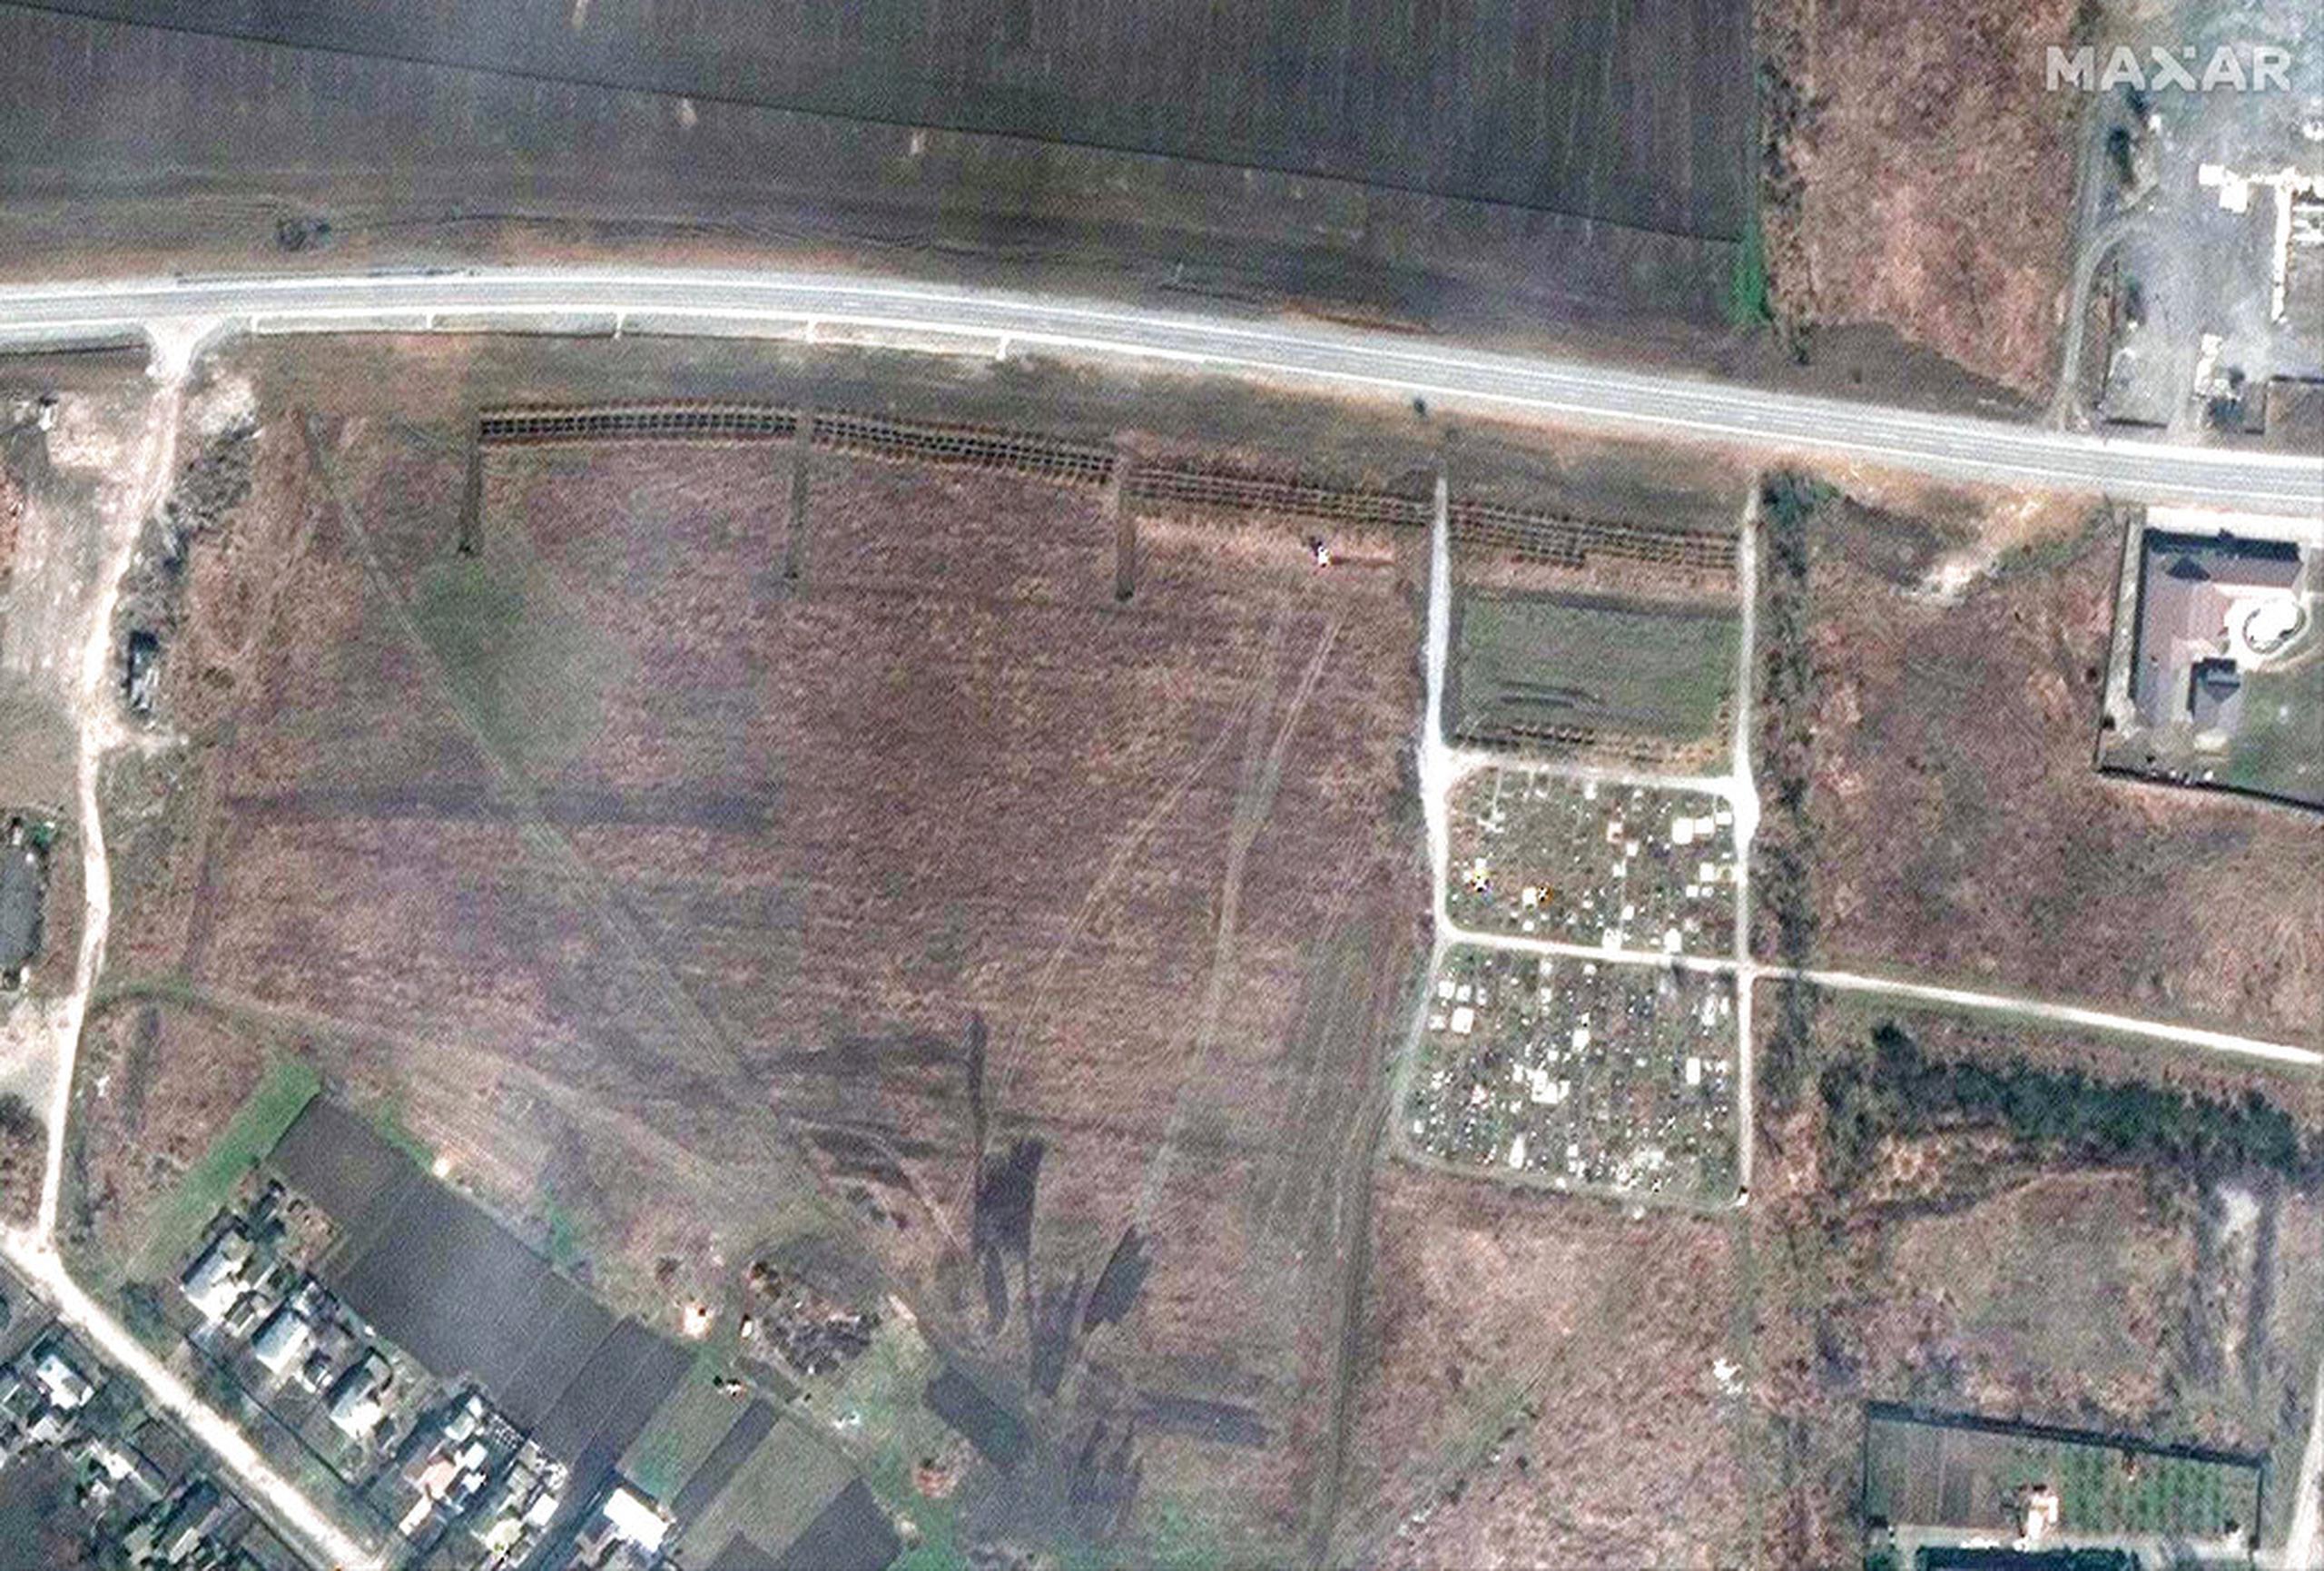 Esta imagen satelital proporcionada por Maxar Technologies el 21 de abril de 2022, muestra una vista general del cementerio en Manhush, a unos 20 kilómetros al oeste de Mariúpol, Ucrania, el 3 de abril de 2022.